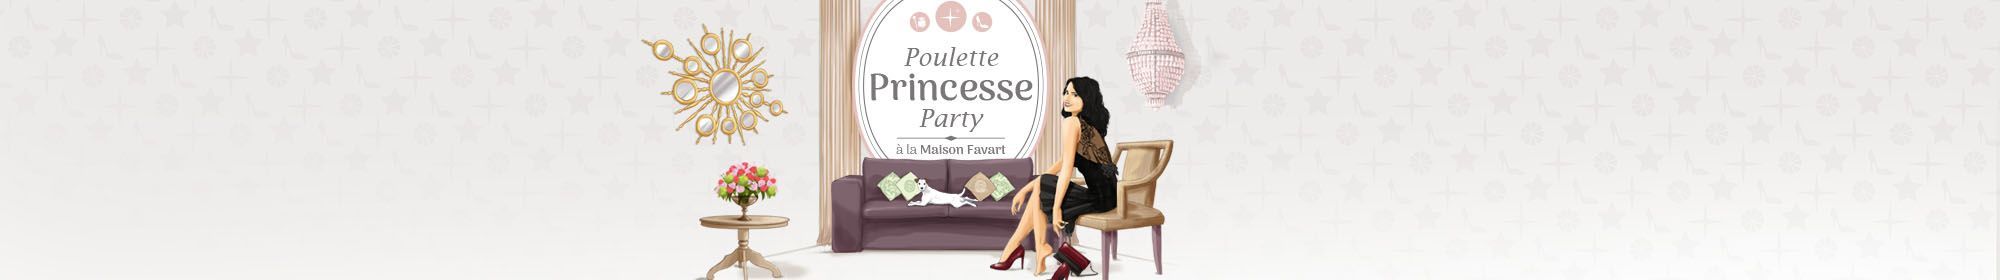 Poulette Princesse Party